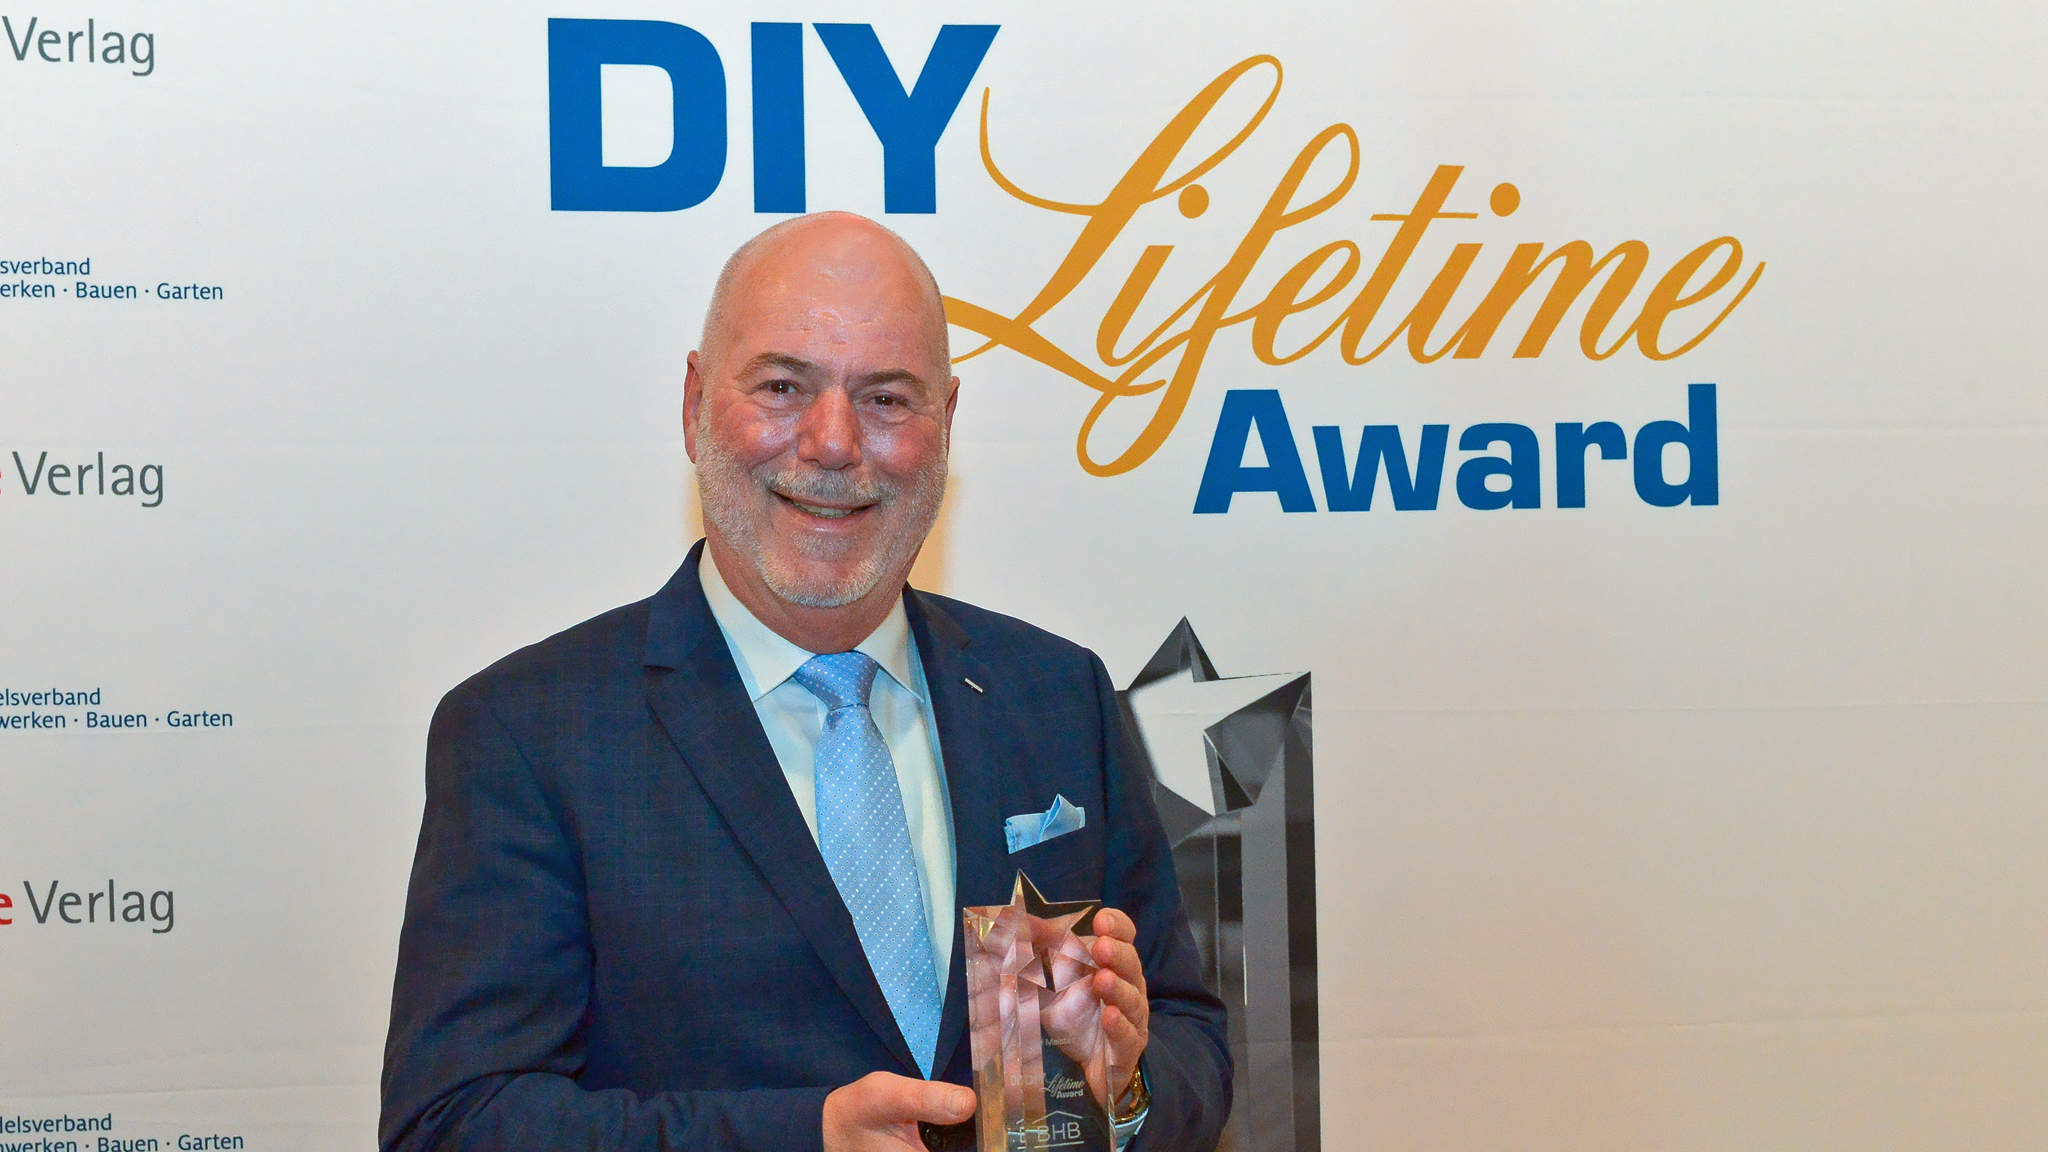 Ralf Meistes erhält DIY-Lifetime Award 2019